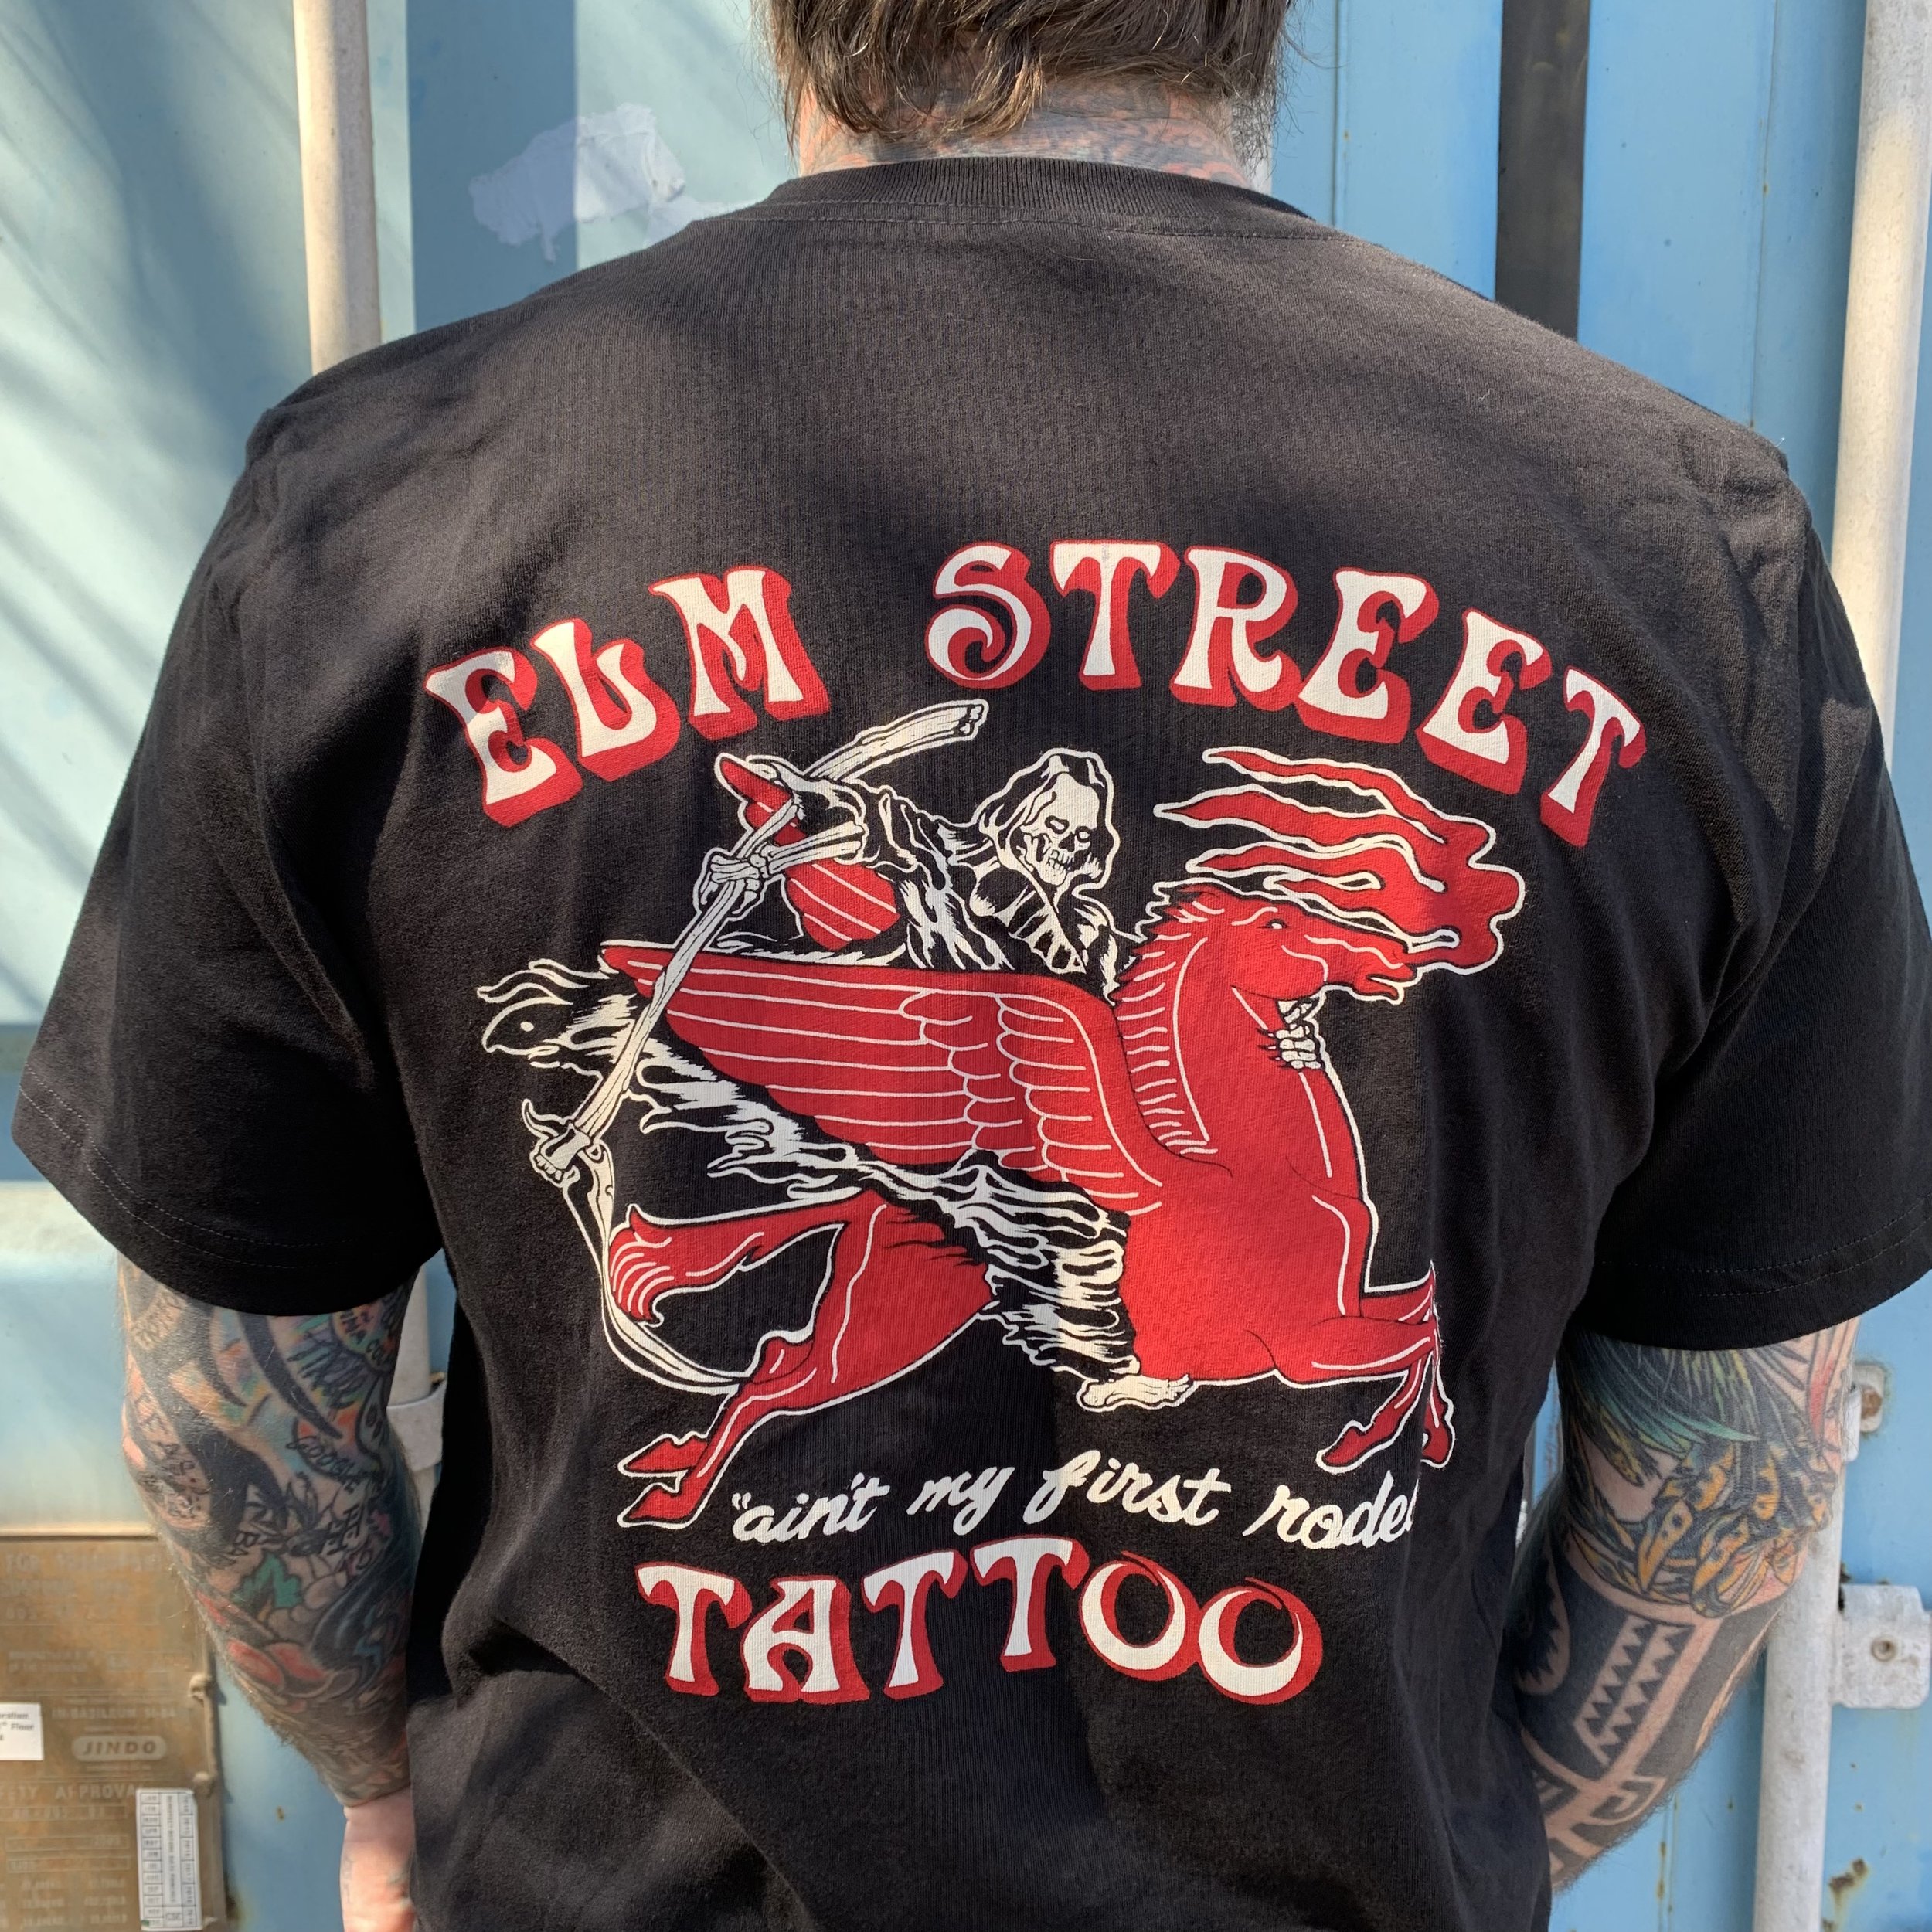 Elm Street Tattoo TShirt Mens Fashion Tops  Sets Tshirts  Polo Shirts  on Carousell